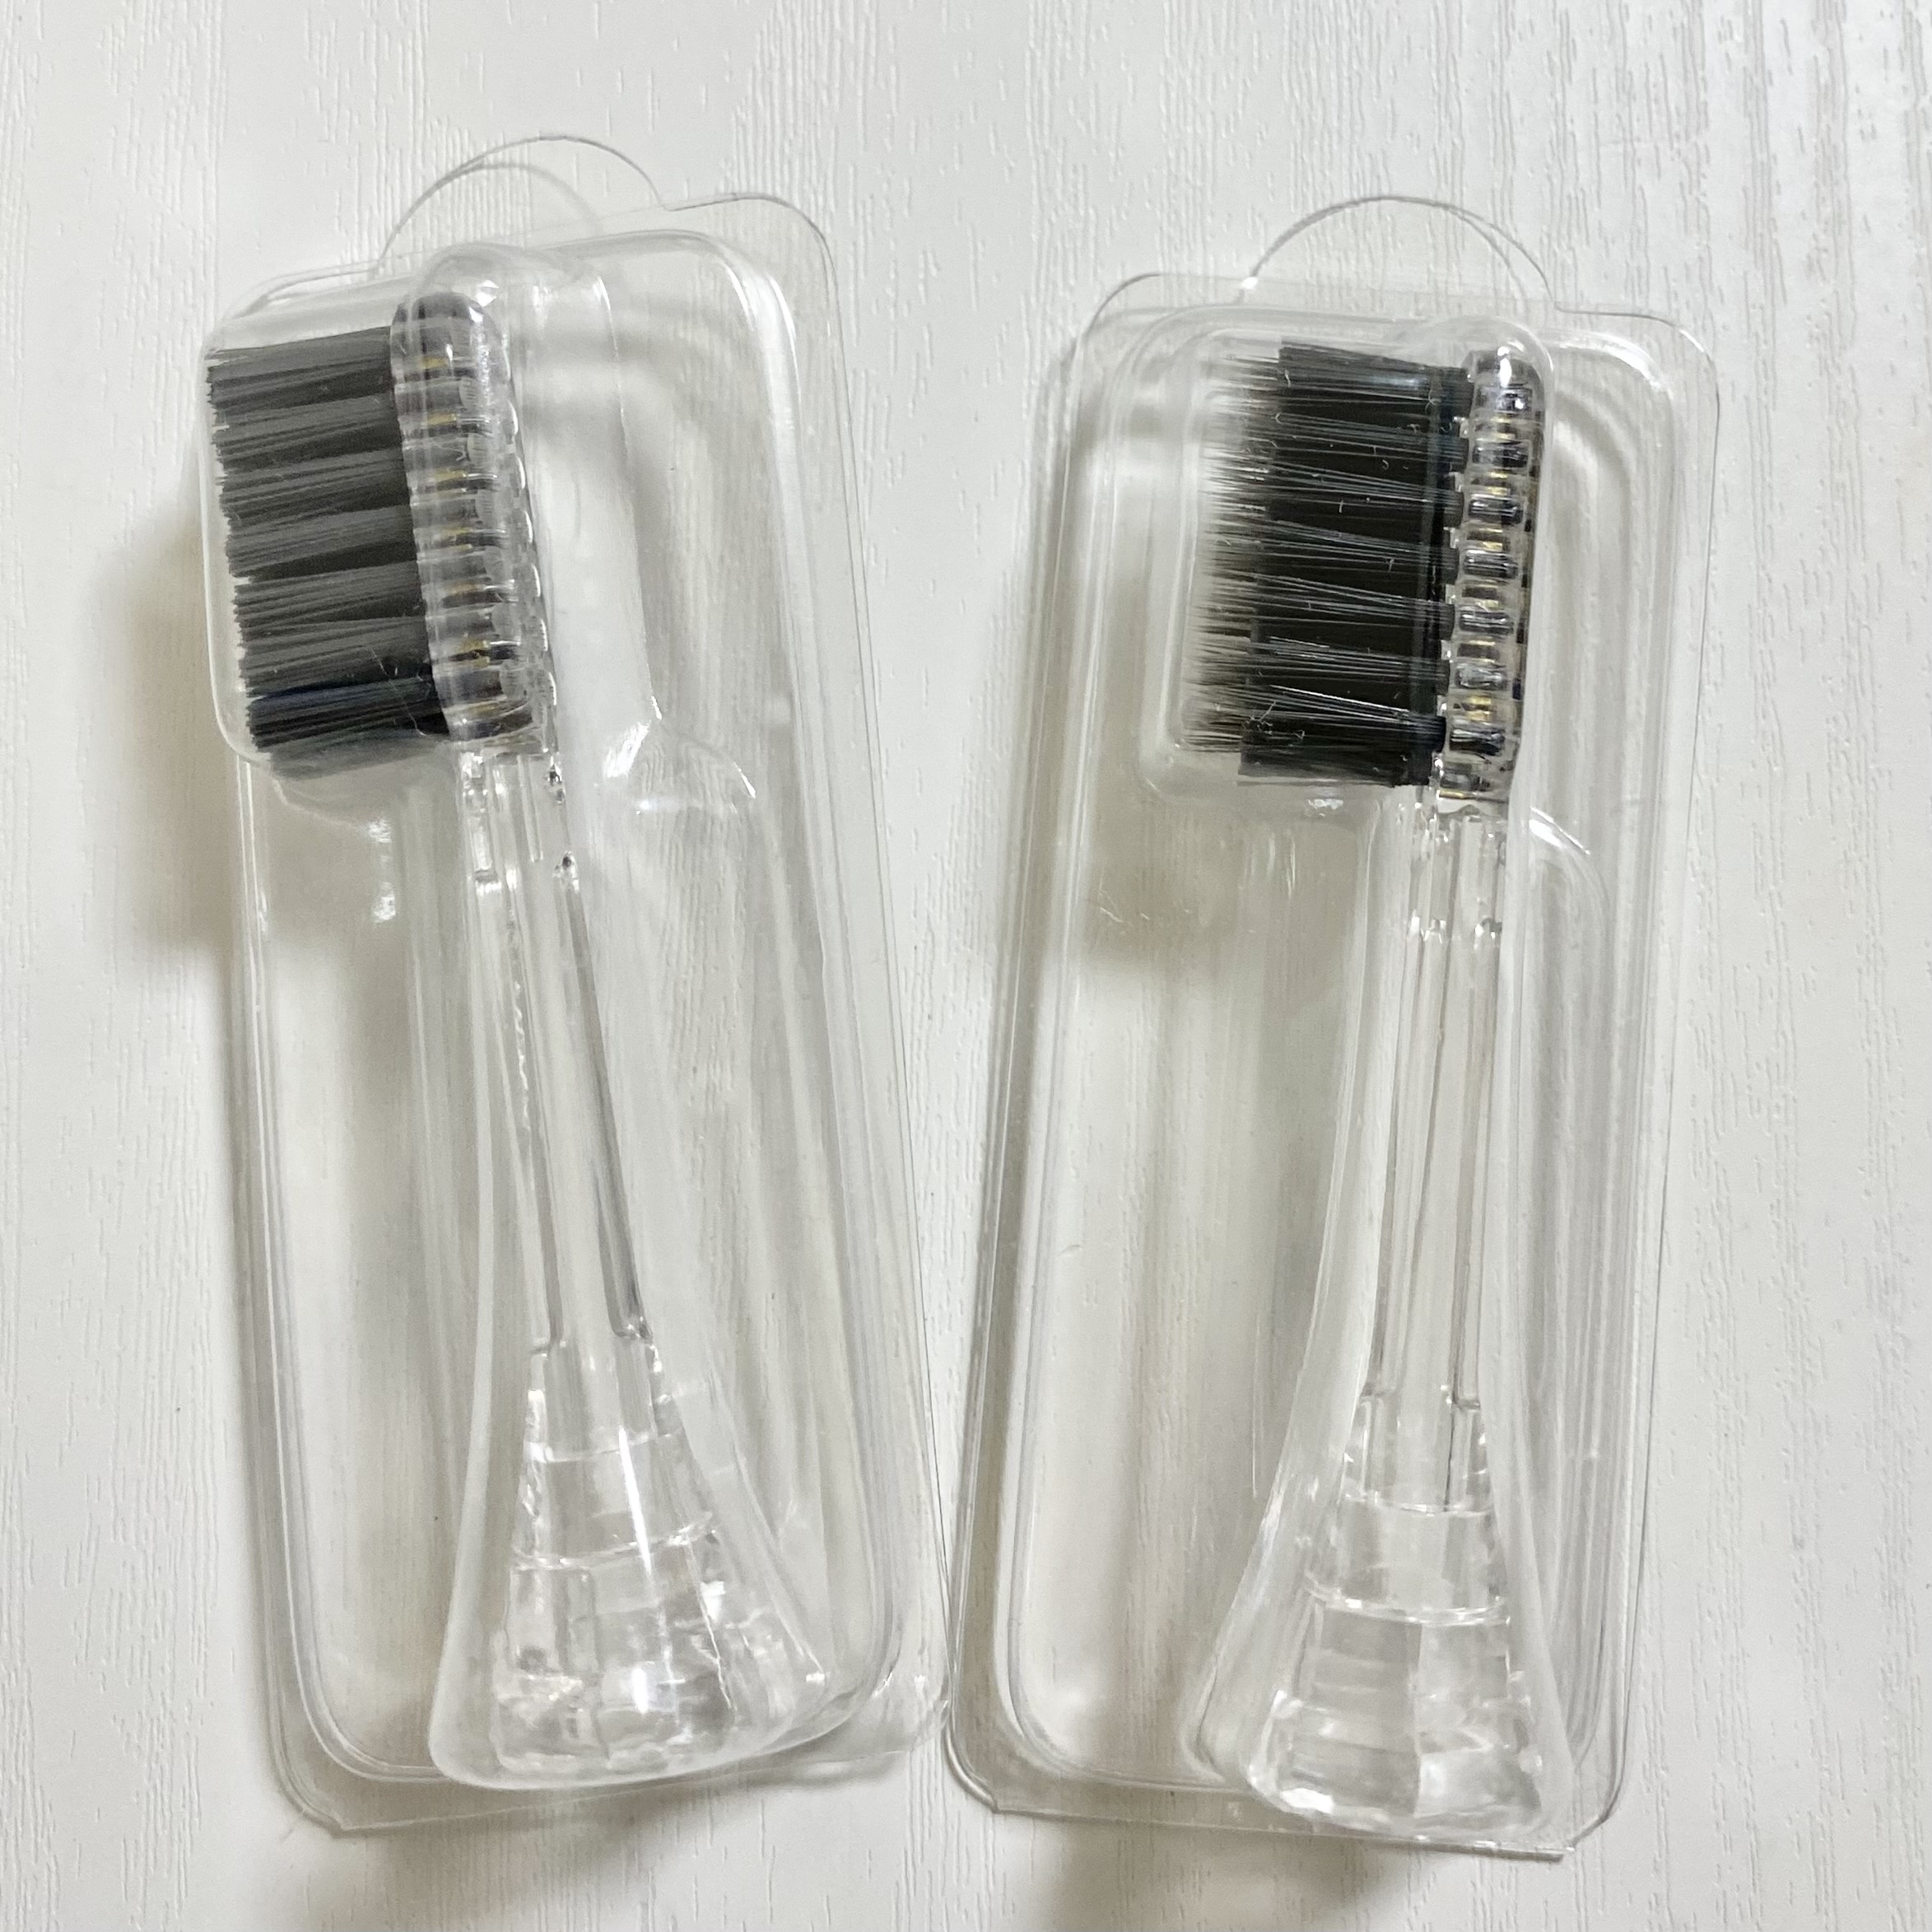 ION-Sei(イオン セイ) 電動歯ブラシの良い点・メリットに関するSORAさんの口コミ画像3